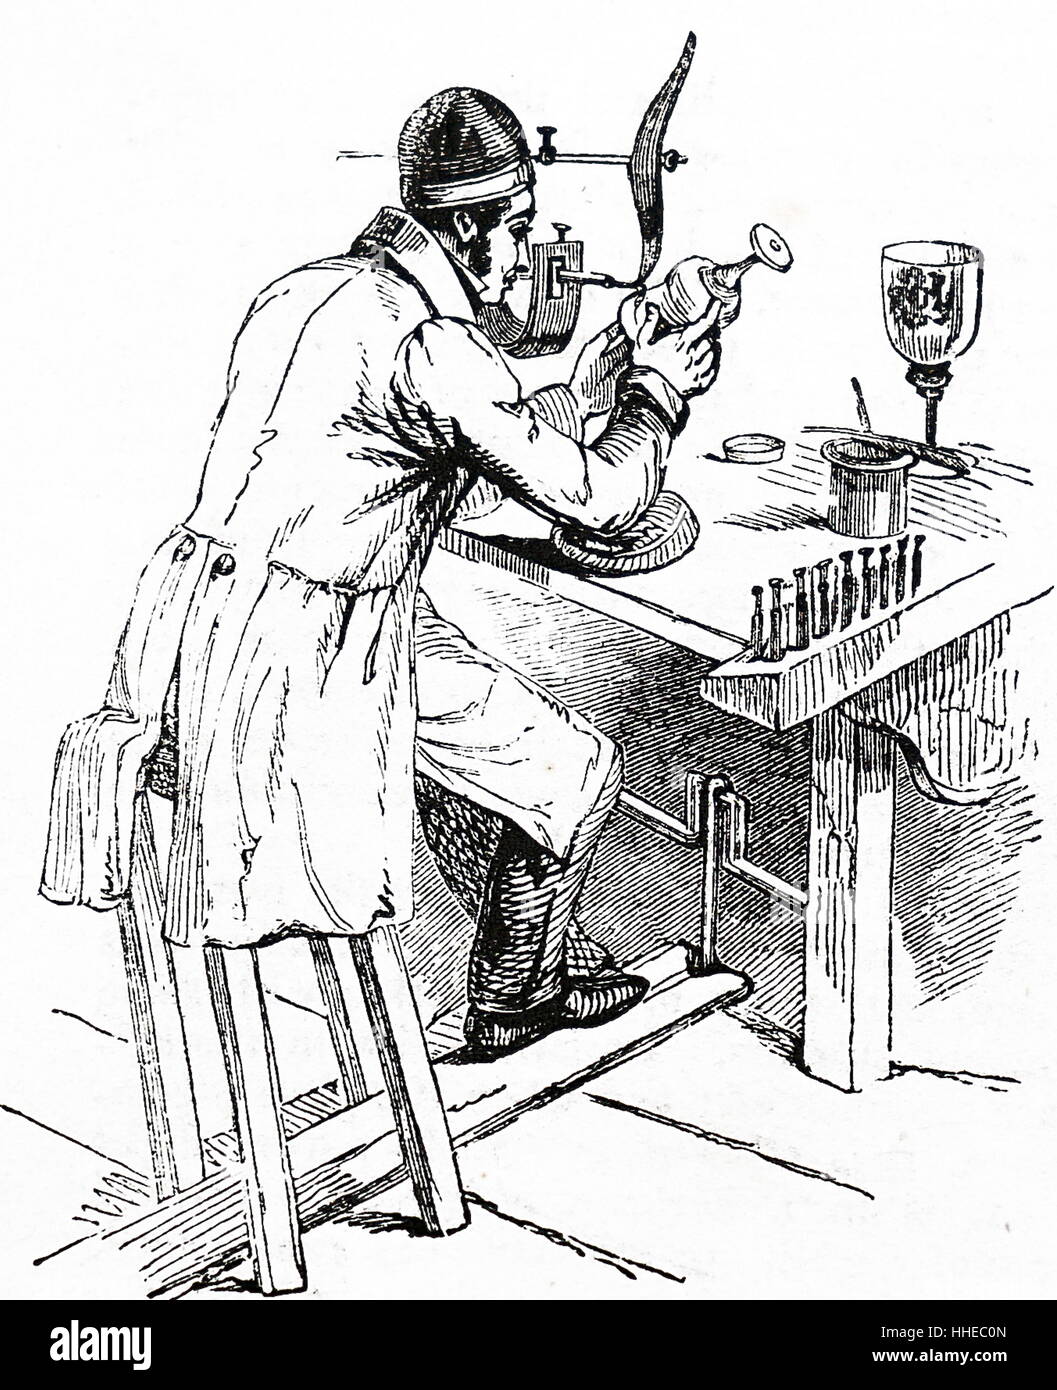 Un grabador de vidrio mediante un torno accionado por un pedal de font. En el banco a su derecha son los discos de encapsuladoras de diferentes diámetros, que junto con el esmeril humedecidos con aceite, fueron utilizados para grabar el vidrio. 1841 Foto de stock